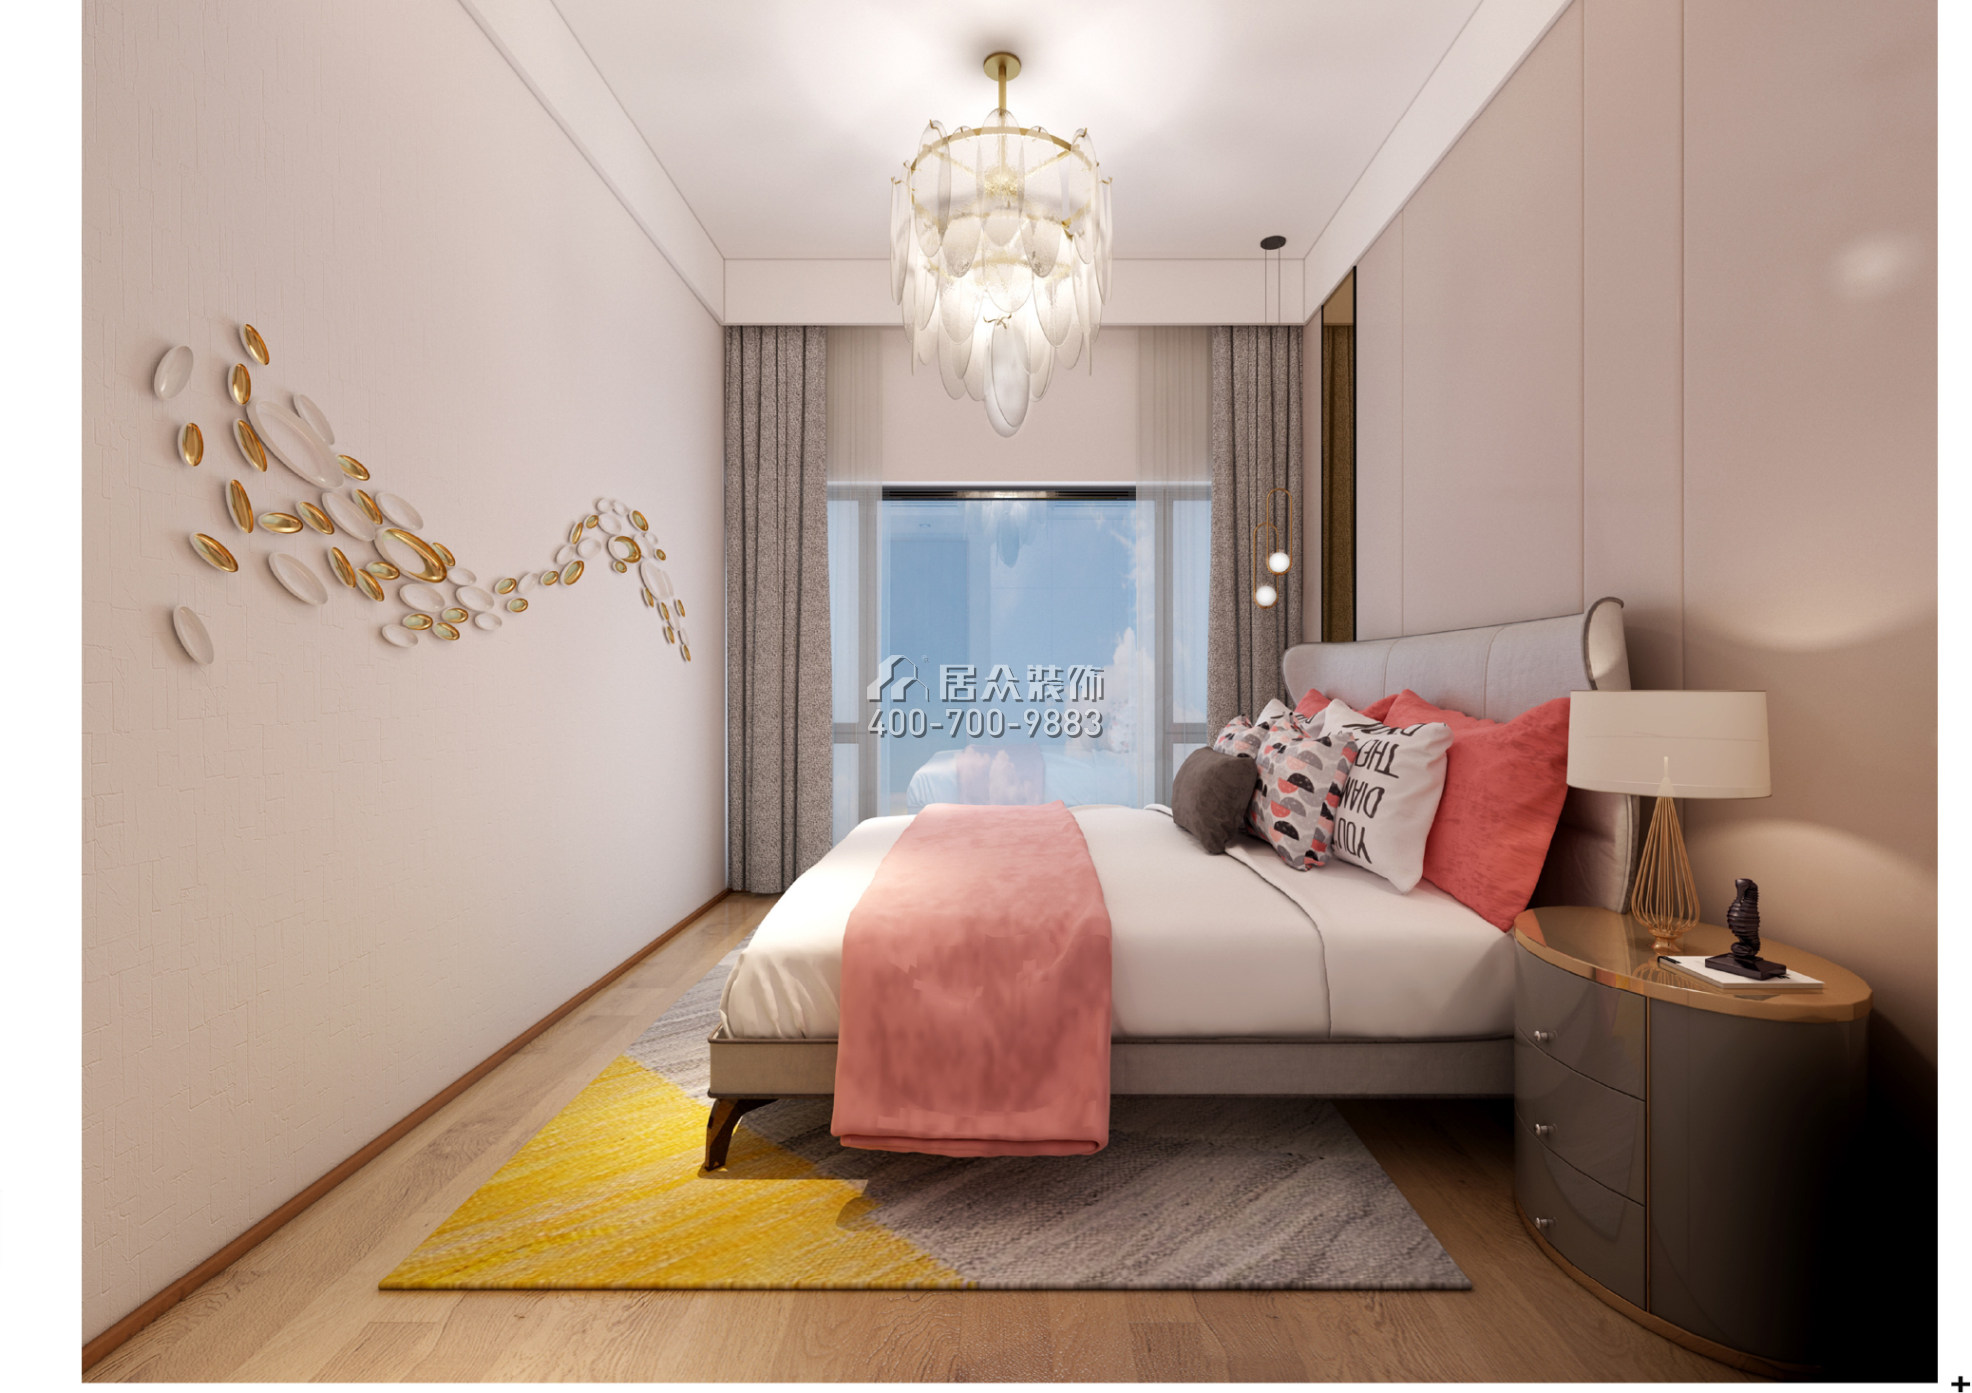 华联城市全景花园250平方米现代简约风格平层户型卧室装修效果图